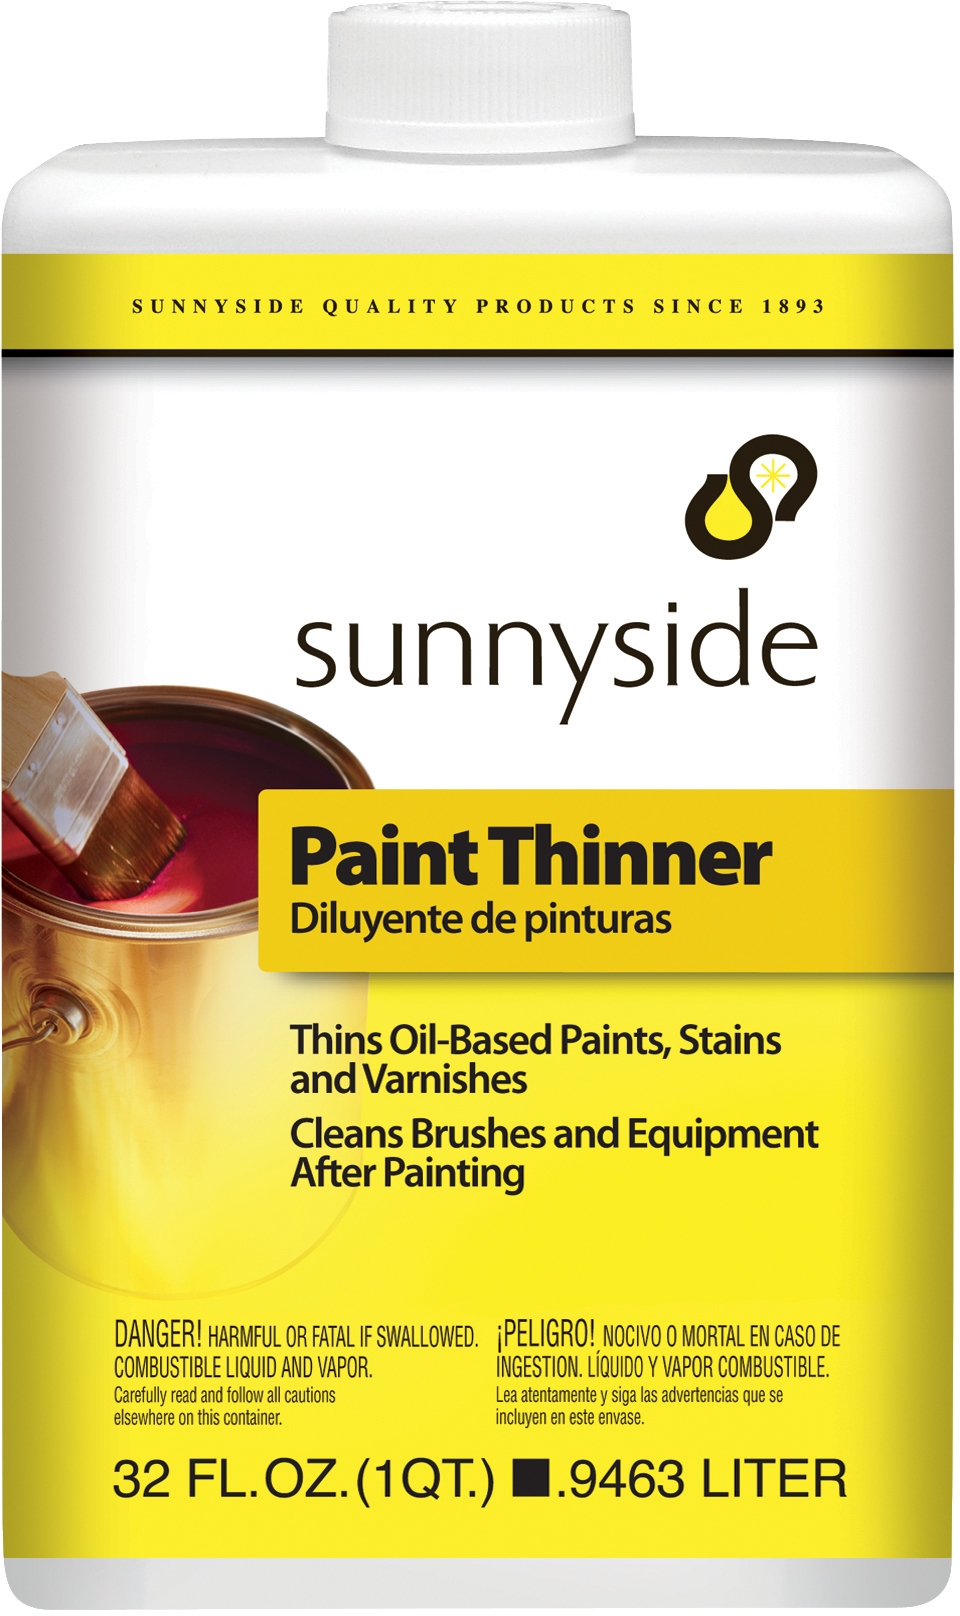 Q&A: Mineral spirits vs. paint thinner vs. turpentine vs. naphtha